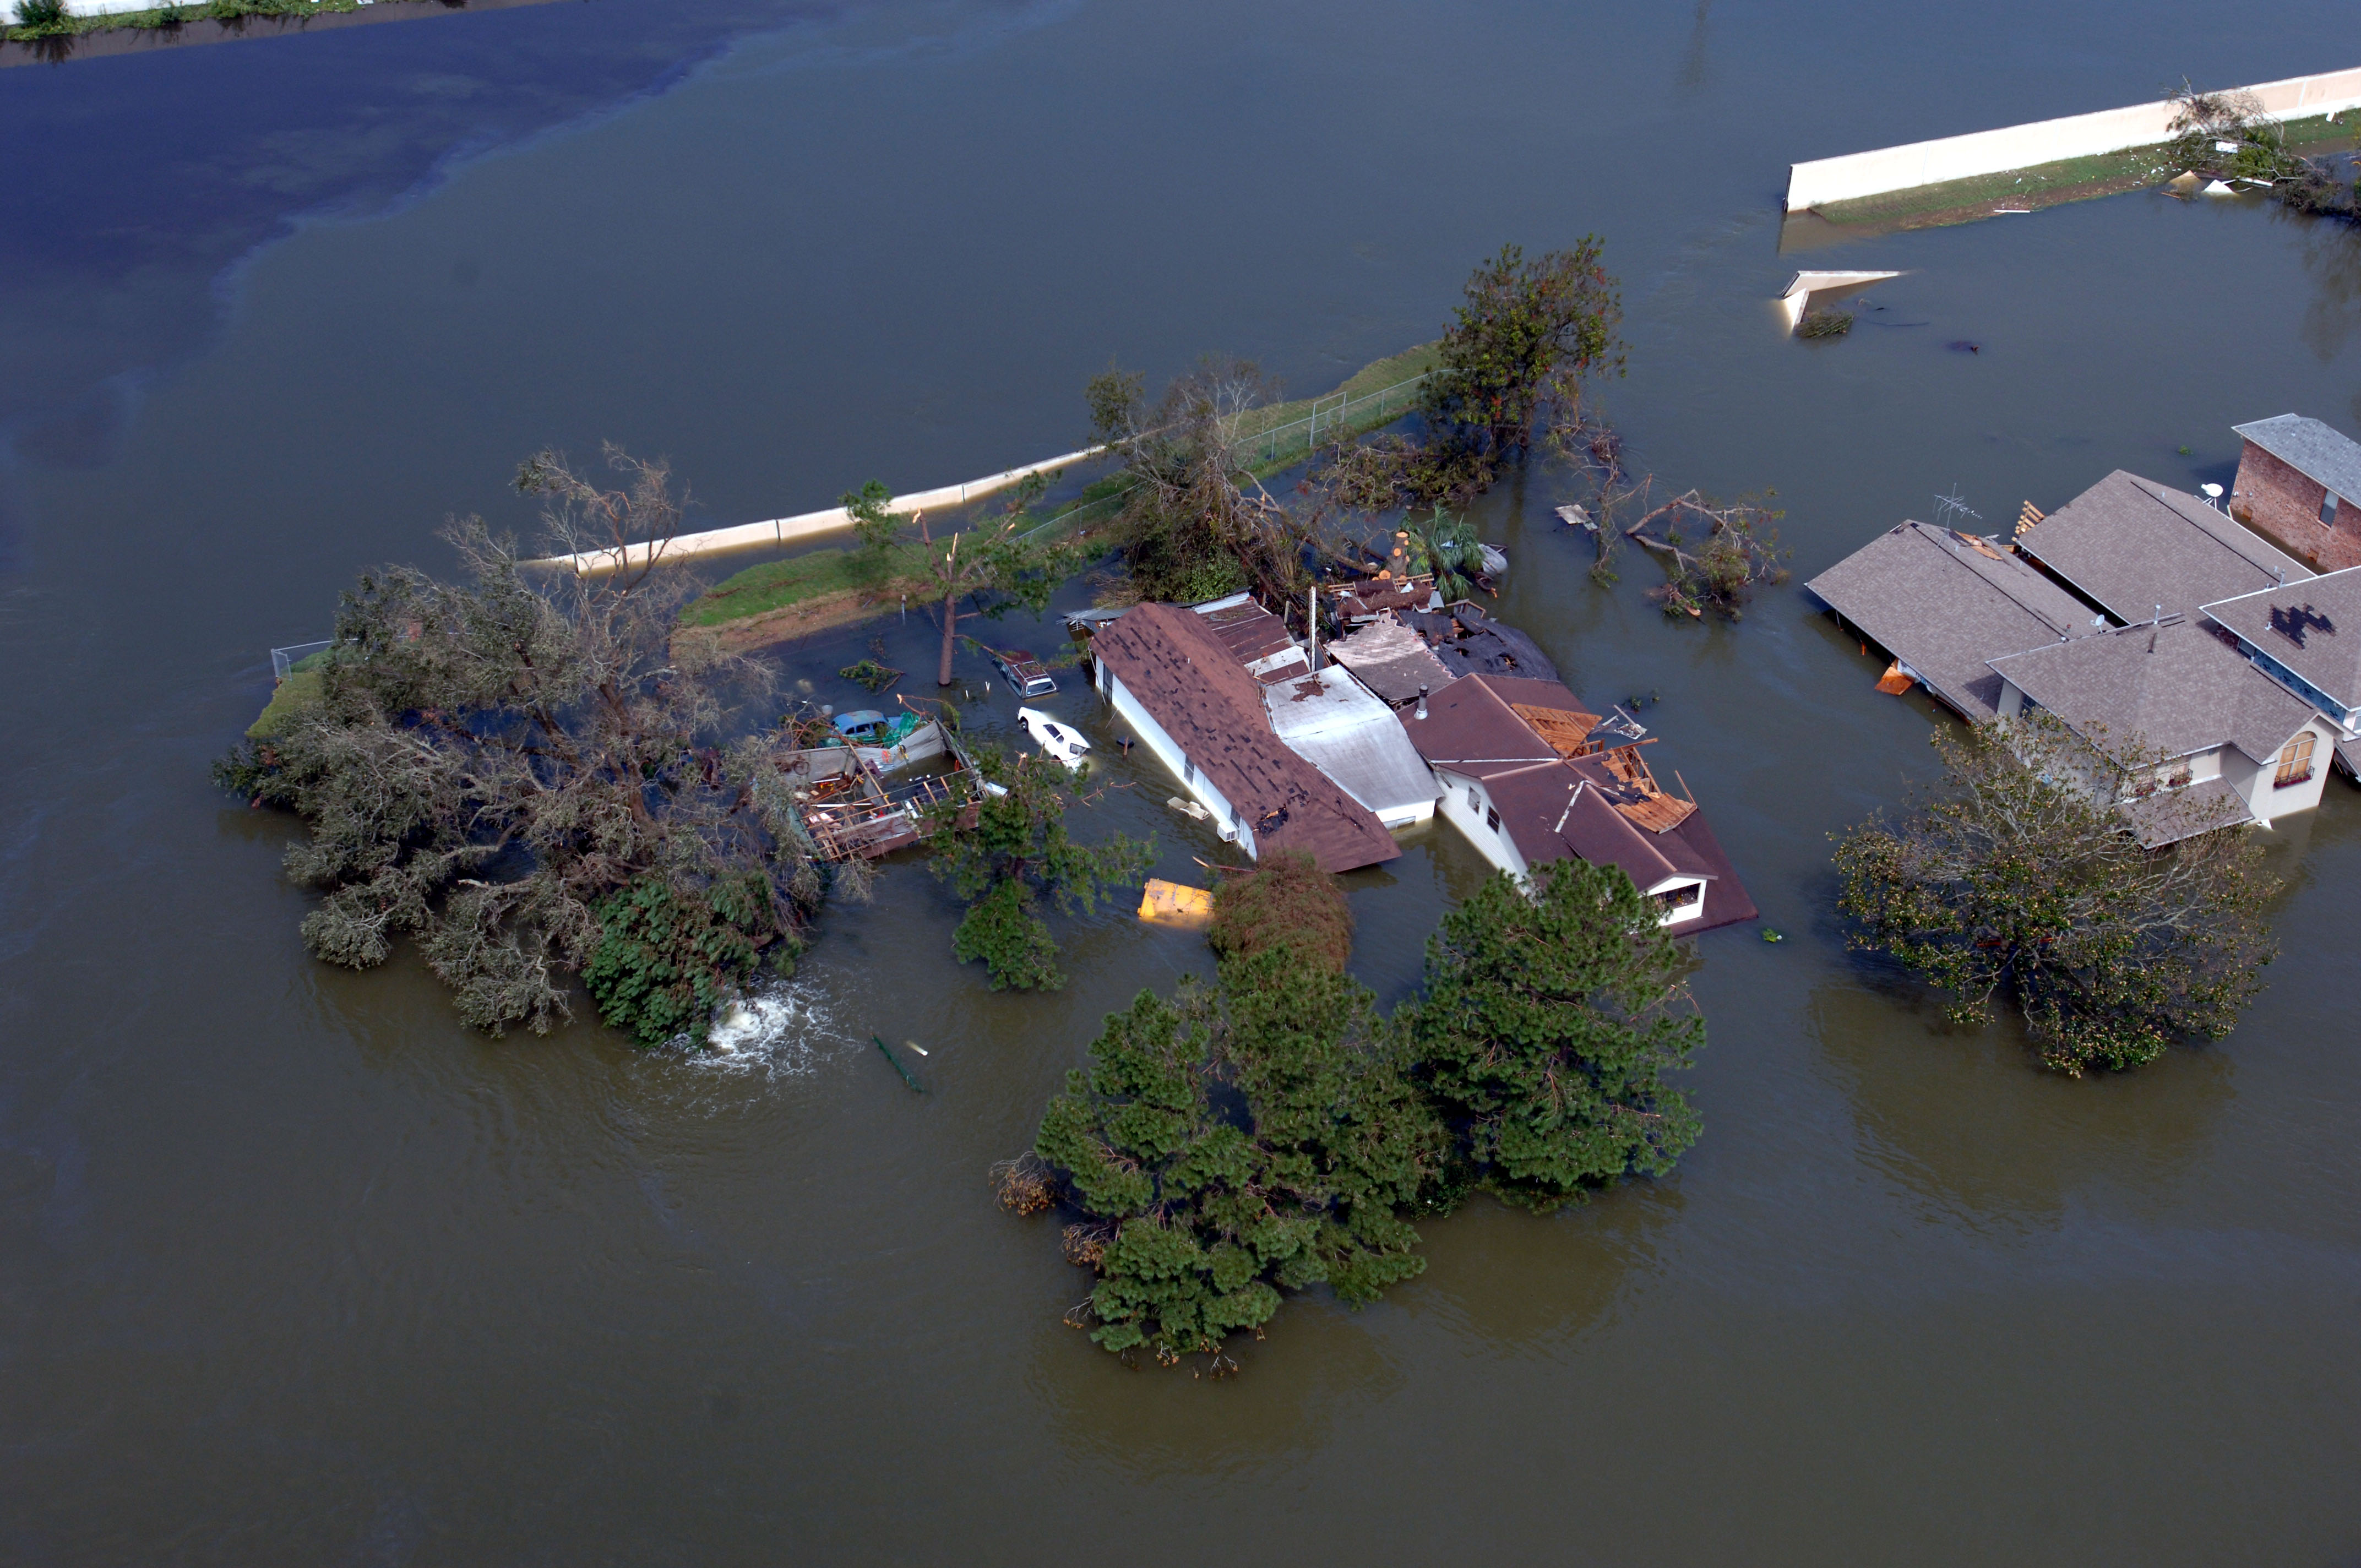 FEMA - 14991 - Photograph by Jocelyn Augustino taken on 08-30-2005 in Louisiana